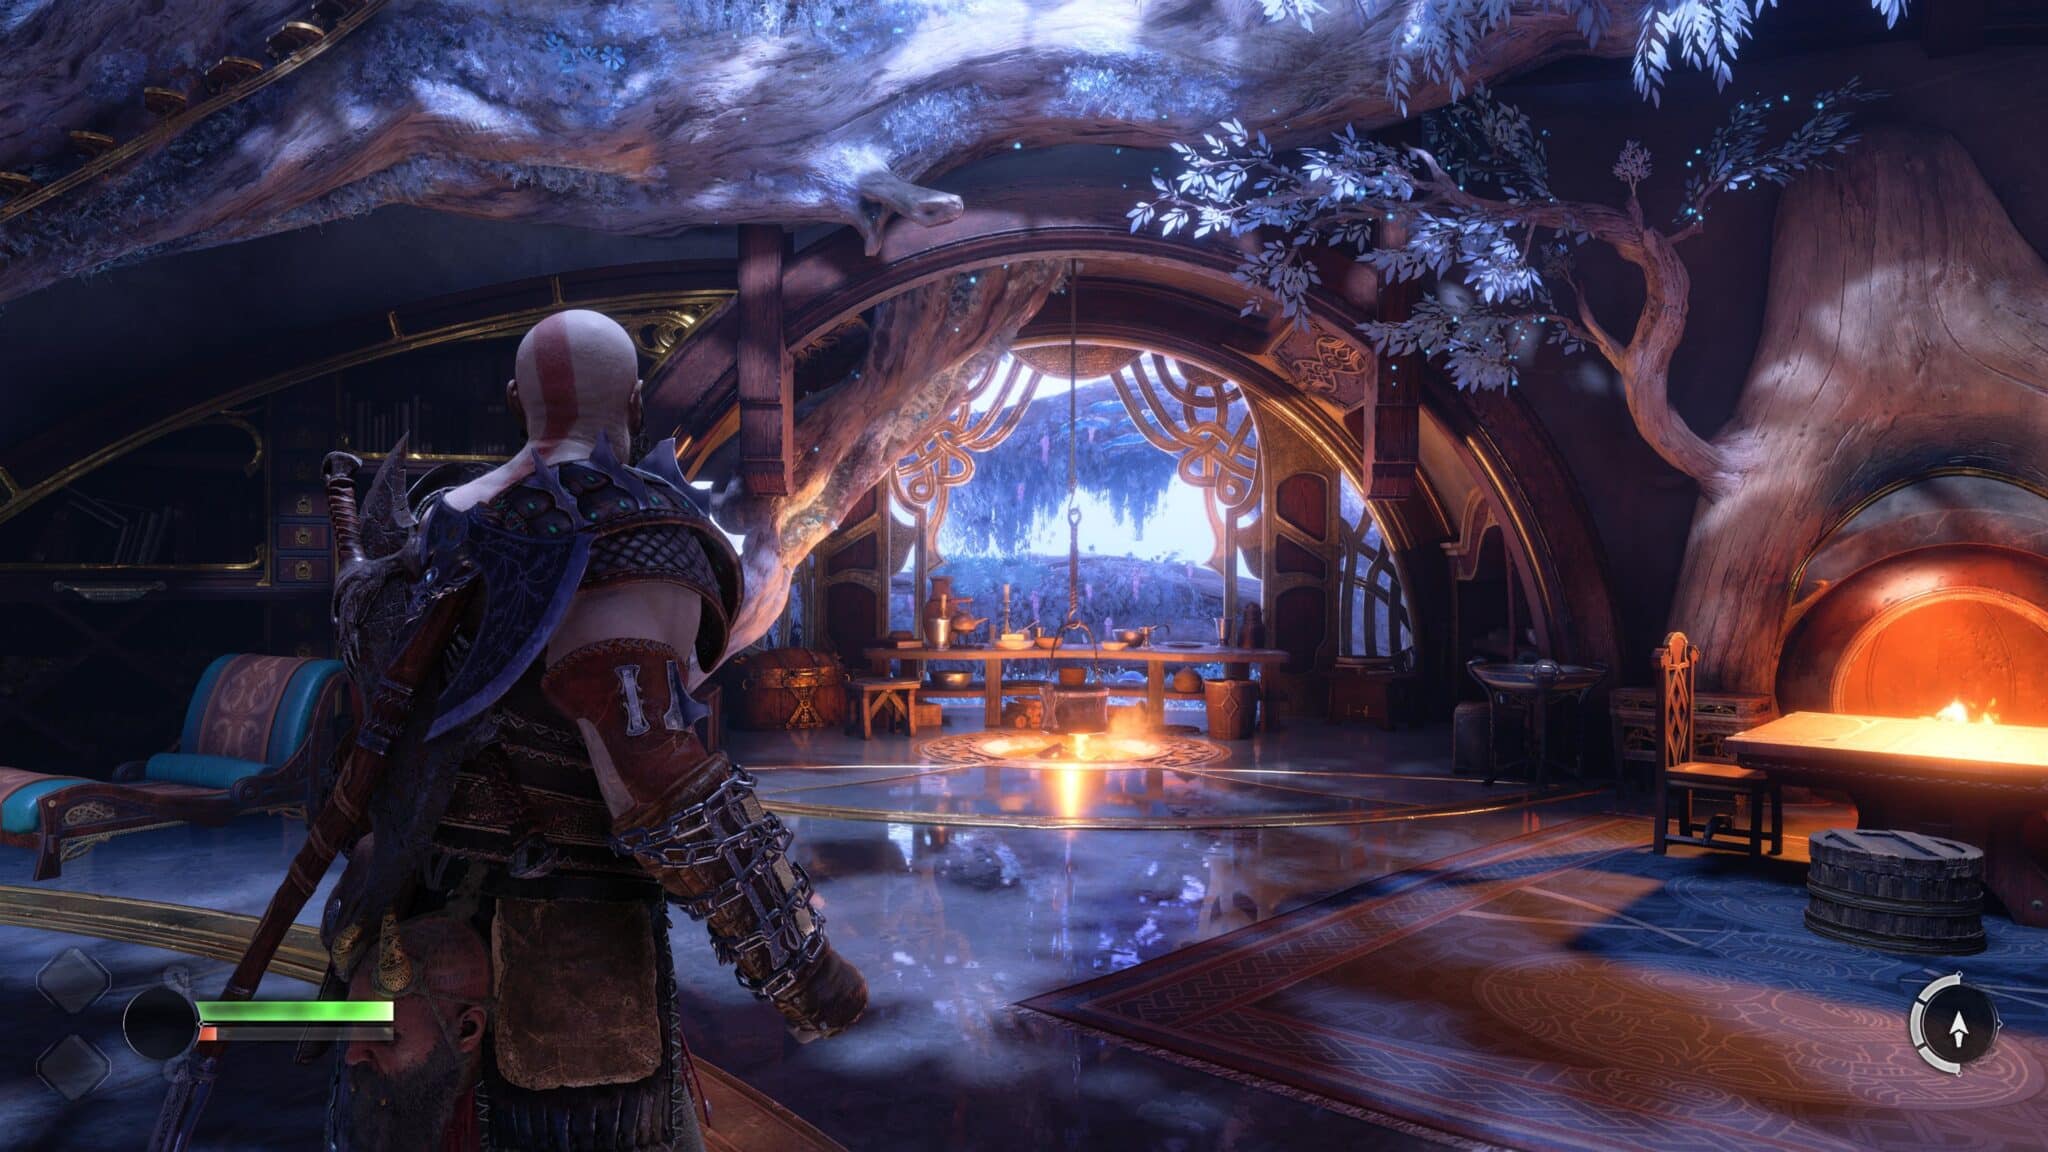 (W przerwach między swoimi przygodami Kratos i Atreus regularnie schronili się w domu swoich krasnoludzkich przyjaciół)